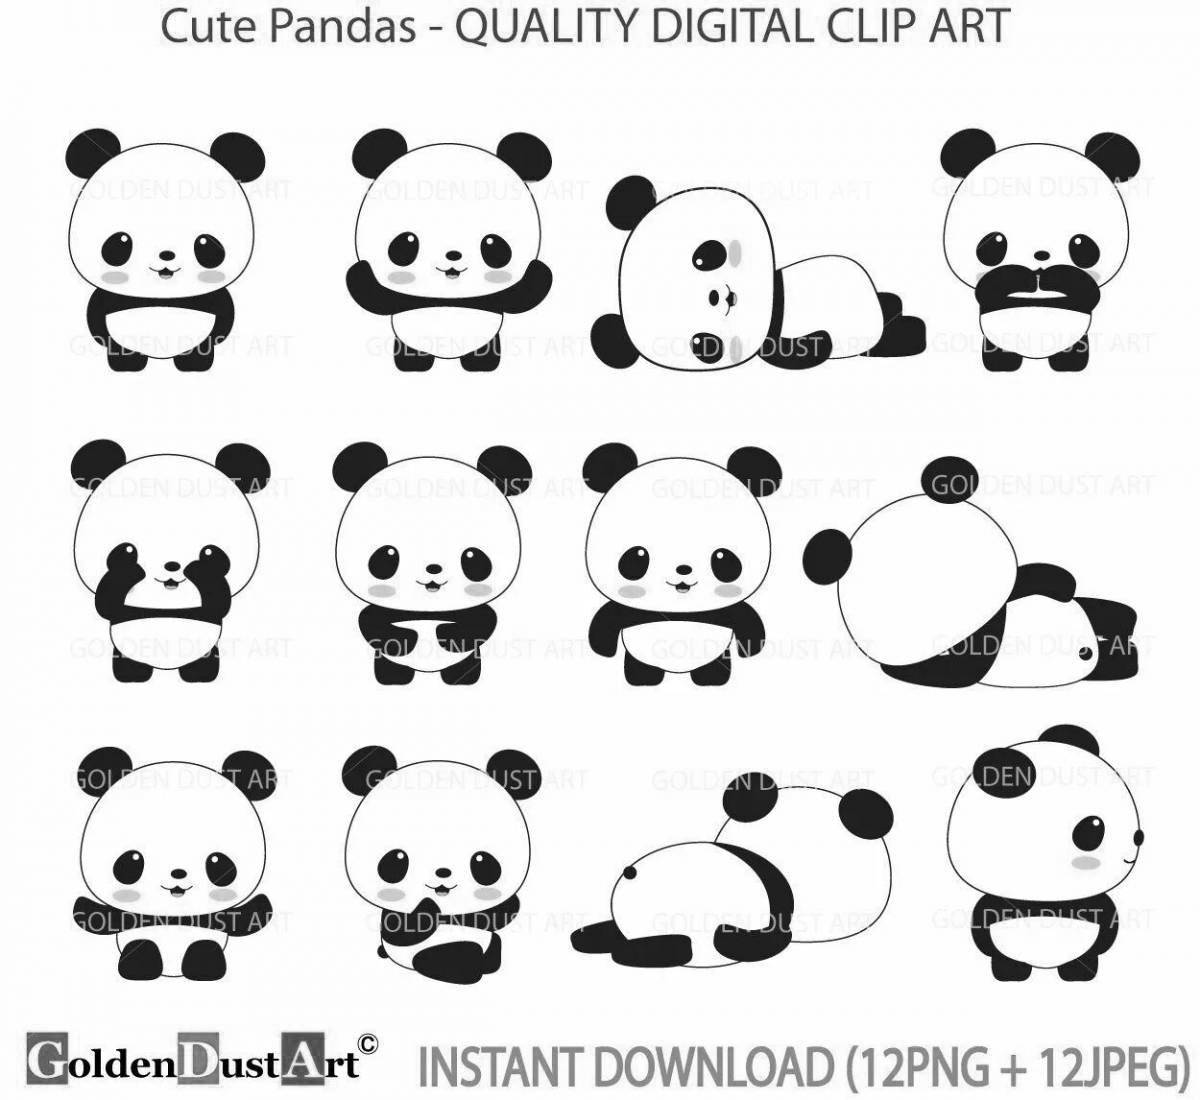 Cute pandas #6